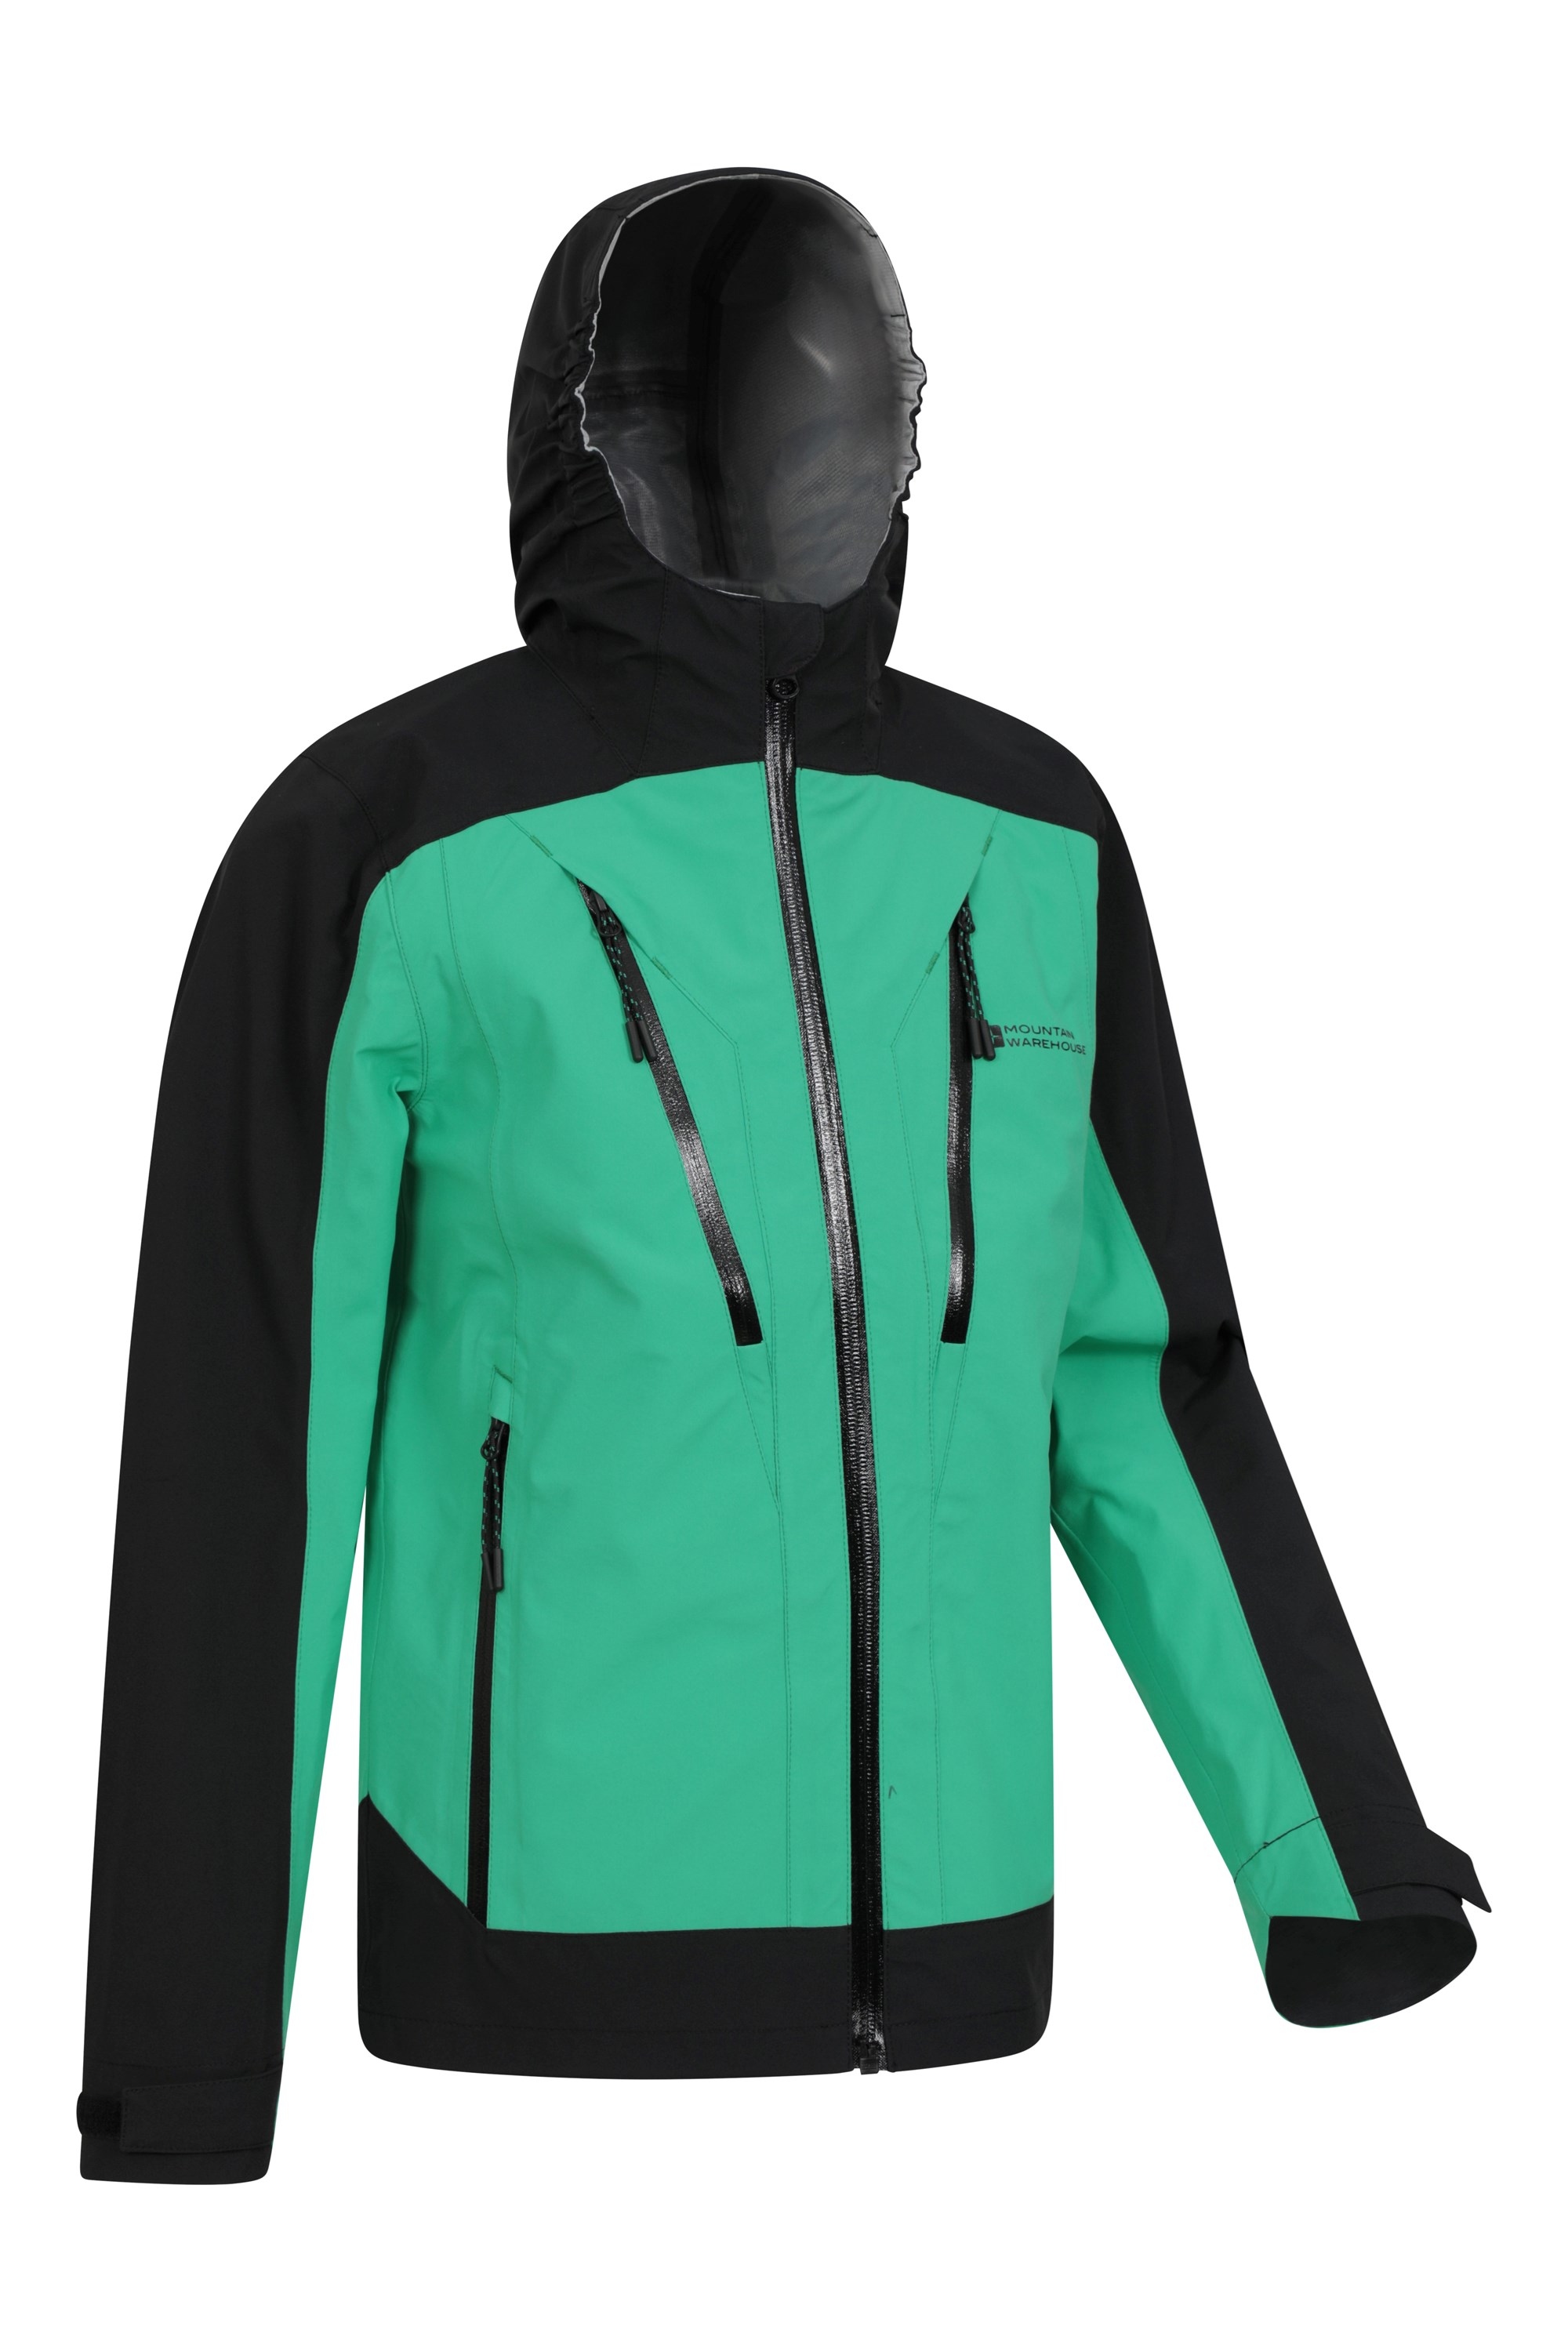 100x127cm Mountain Warehouse Wet Accessories Pocket Raincoat Convenient 